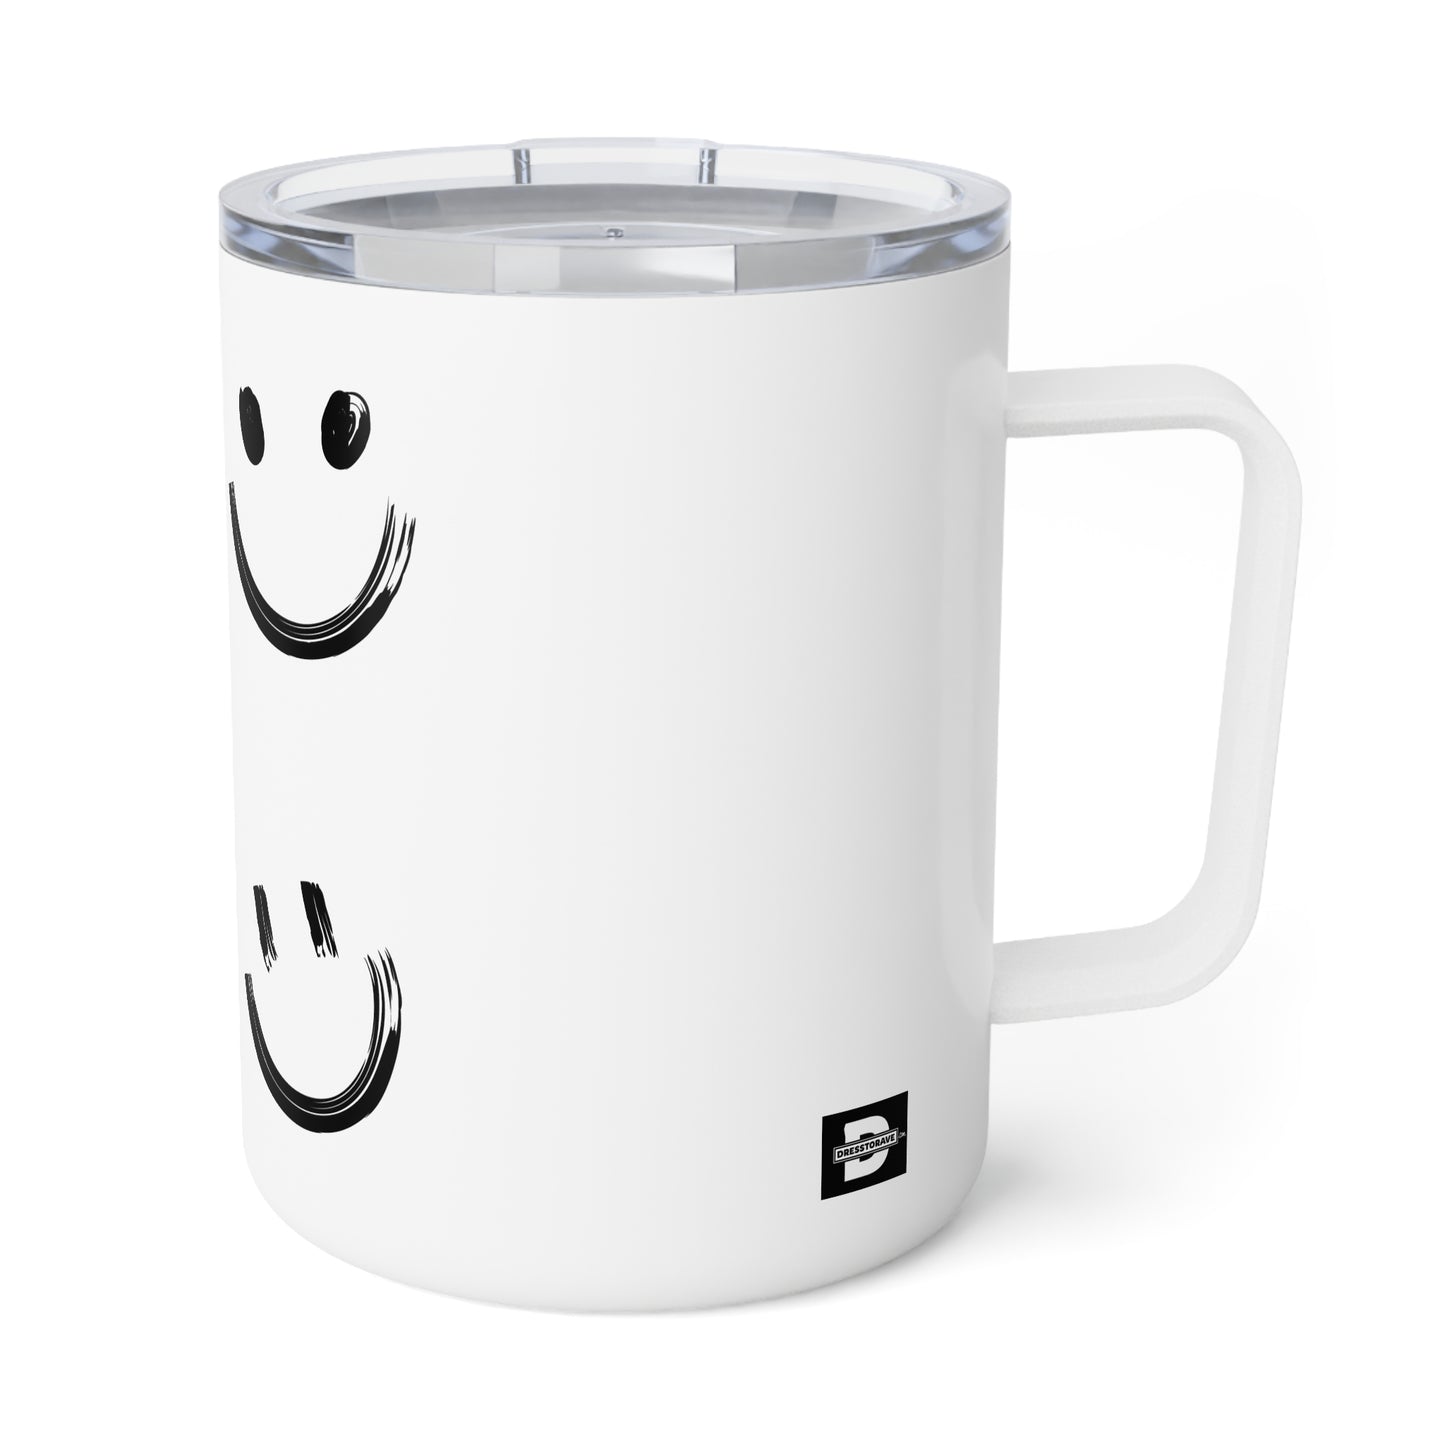 Smiles | Insulated Coffee Mug, 10oz